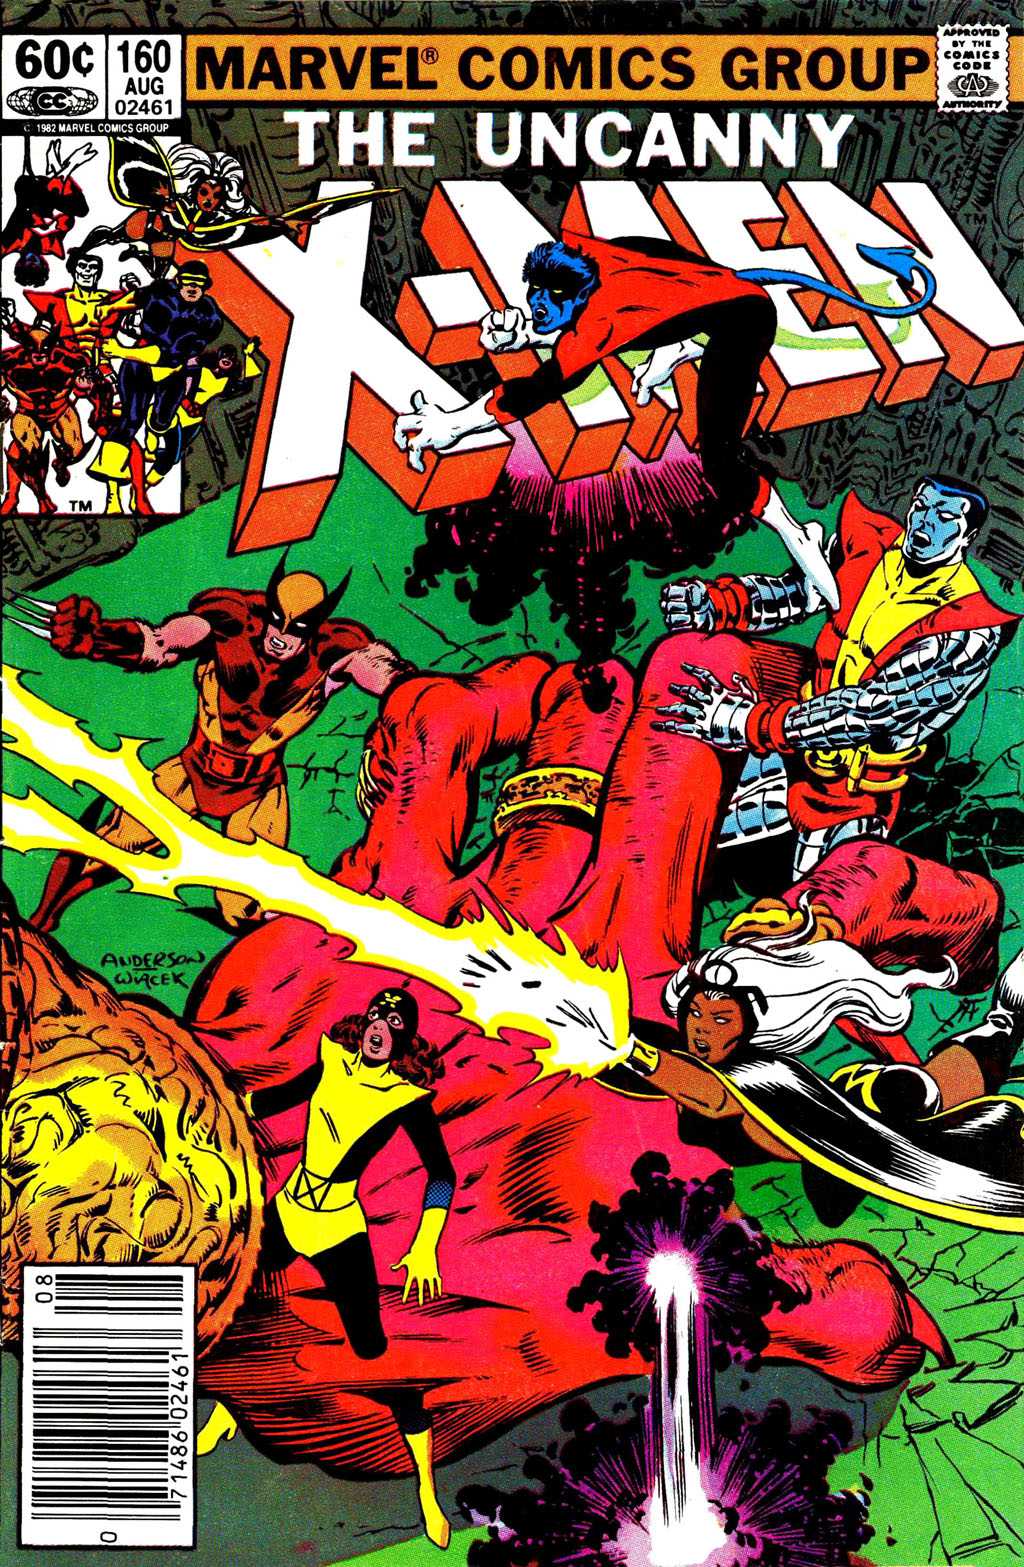 Uncanny X-Men Vol. 1 #160